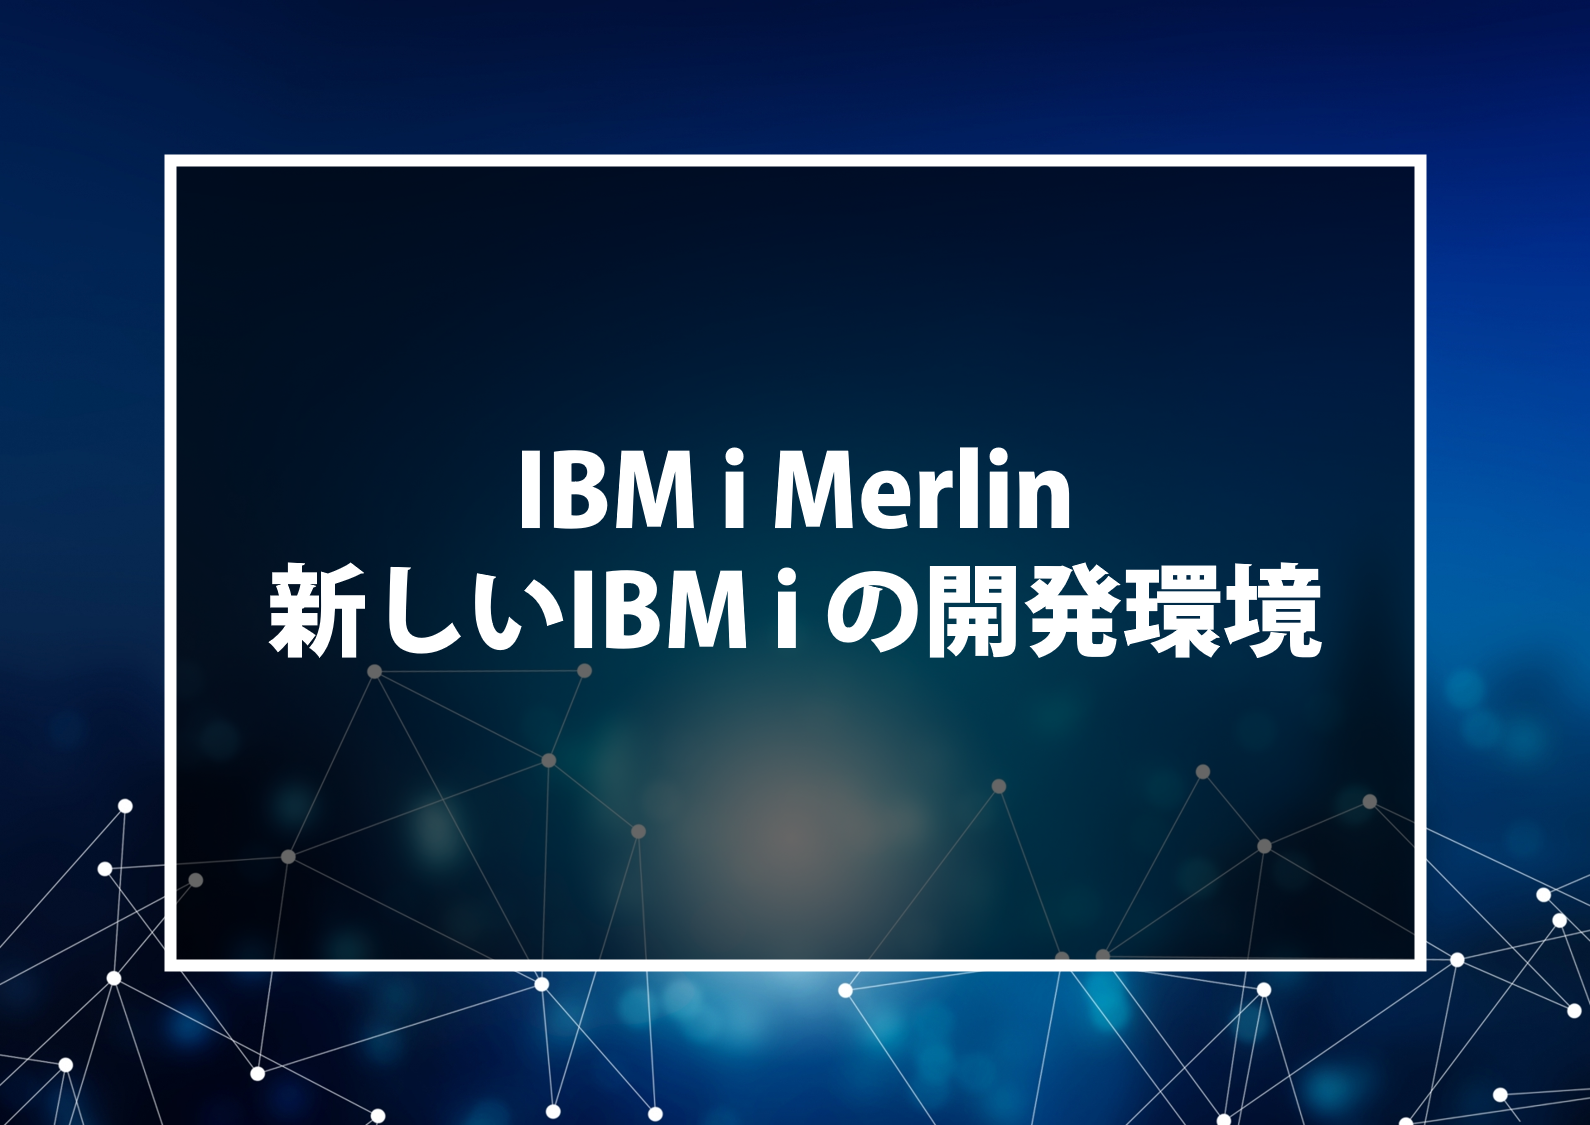 IBM i Merlin 新しいIBM i の開発環境